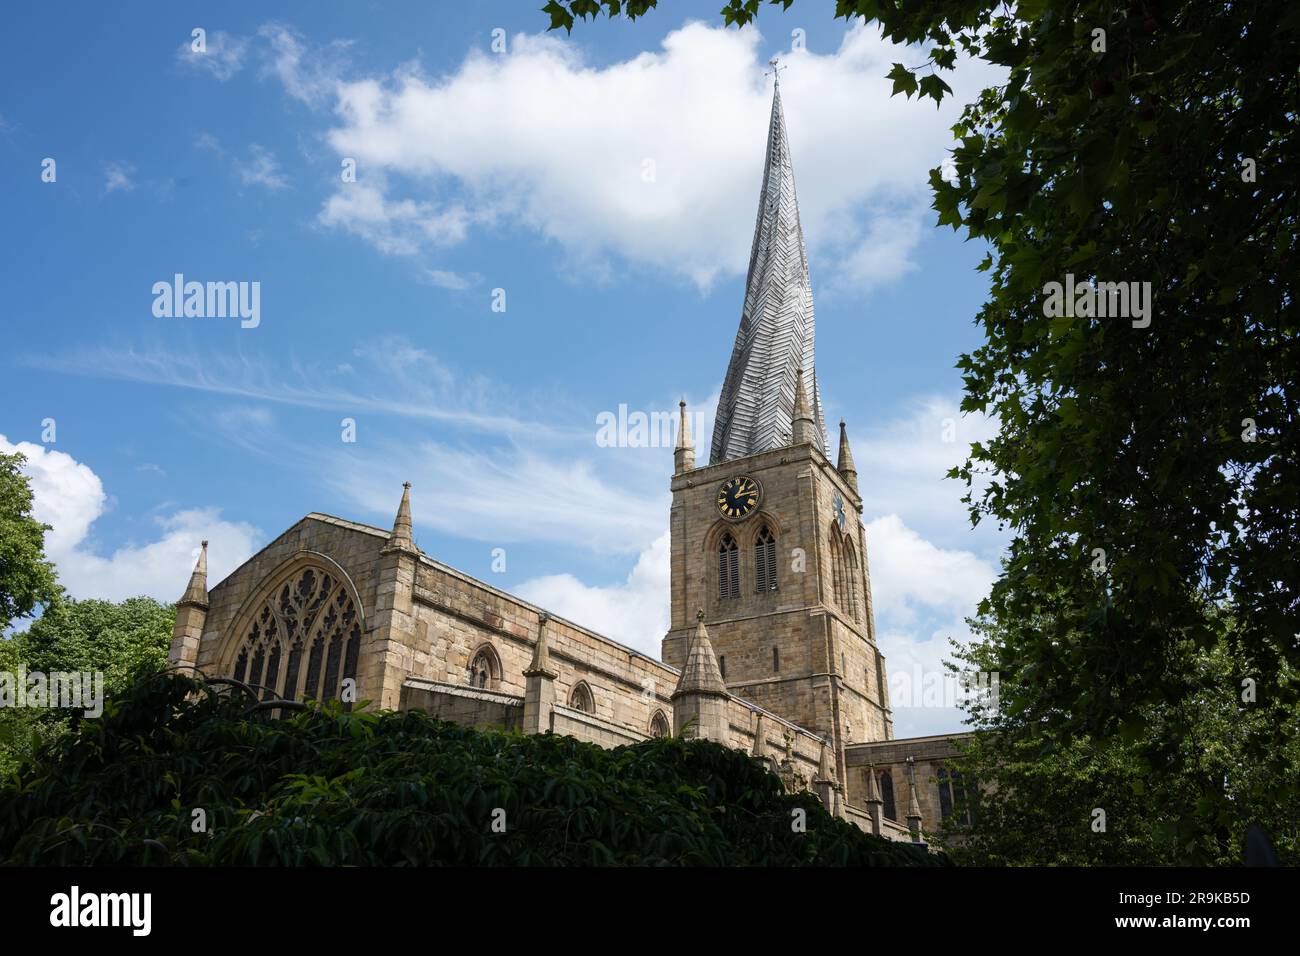 Église paroissiale de Chesterfield avec flèche tordue - Église de St Mary et All Saints - Chesterfield, Derbyshire, Angleterre, Royaume-Uni Banque D'Images